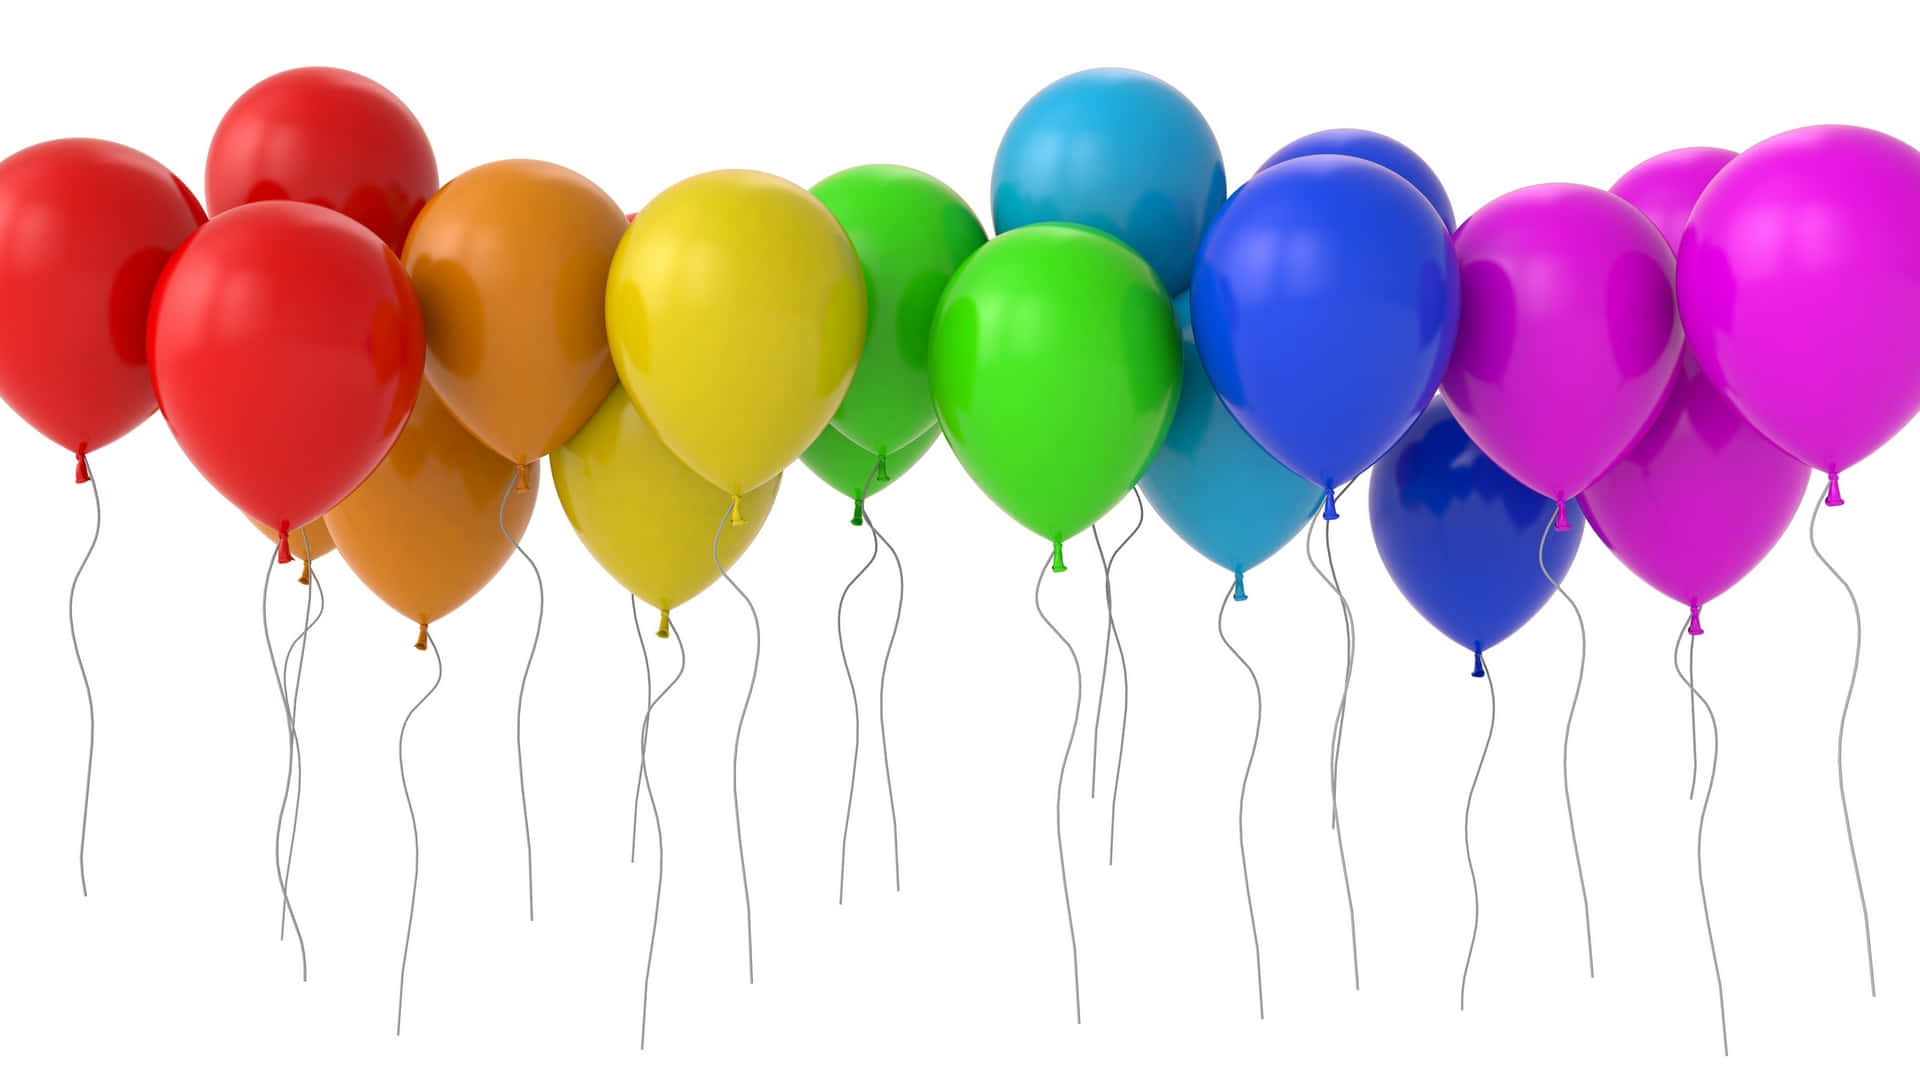 Unavivace Esposizione Di Colorati Palloncini Di Compleanno In Una Festa Di Celebrazione.